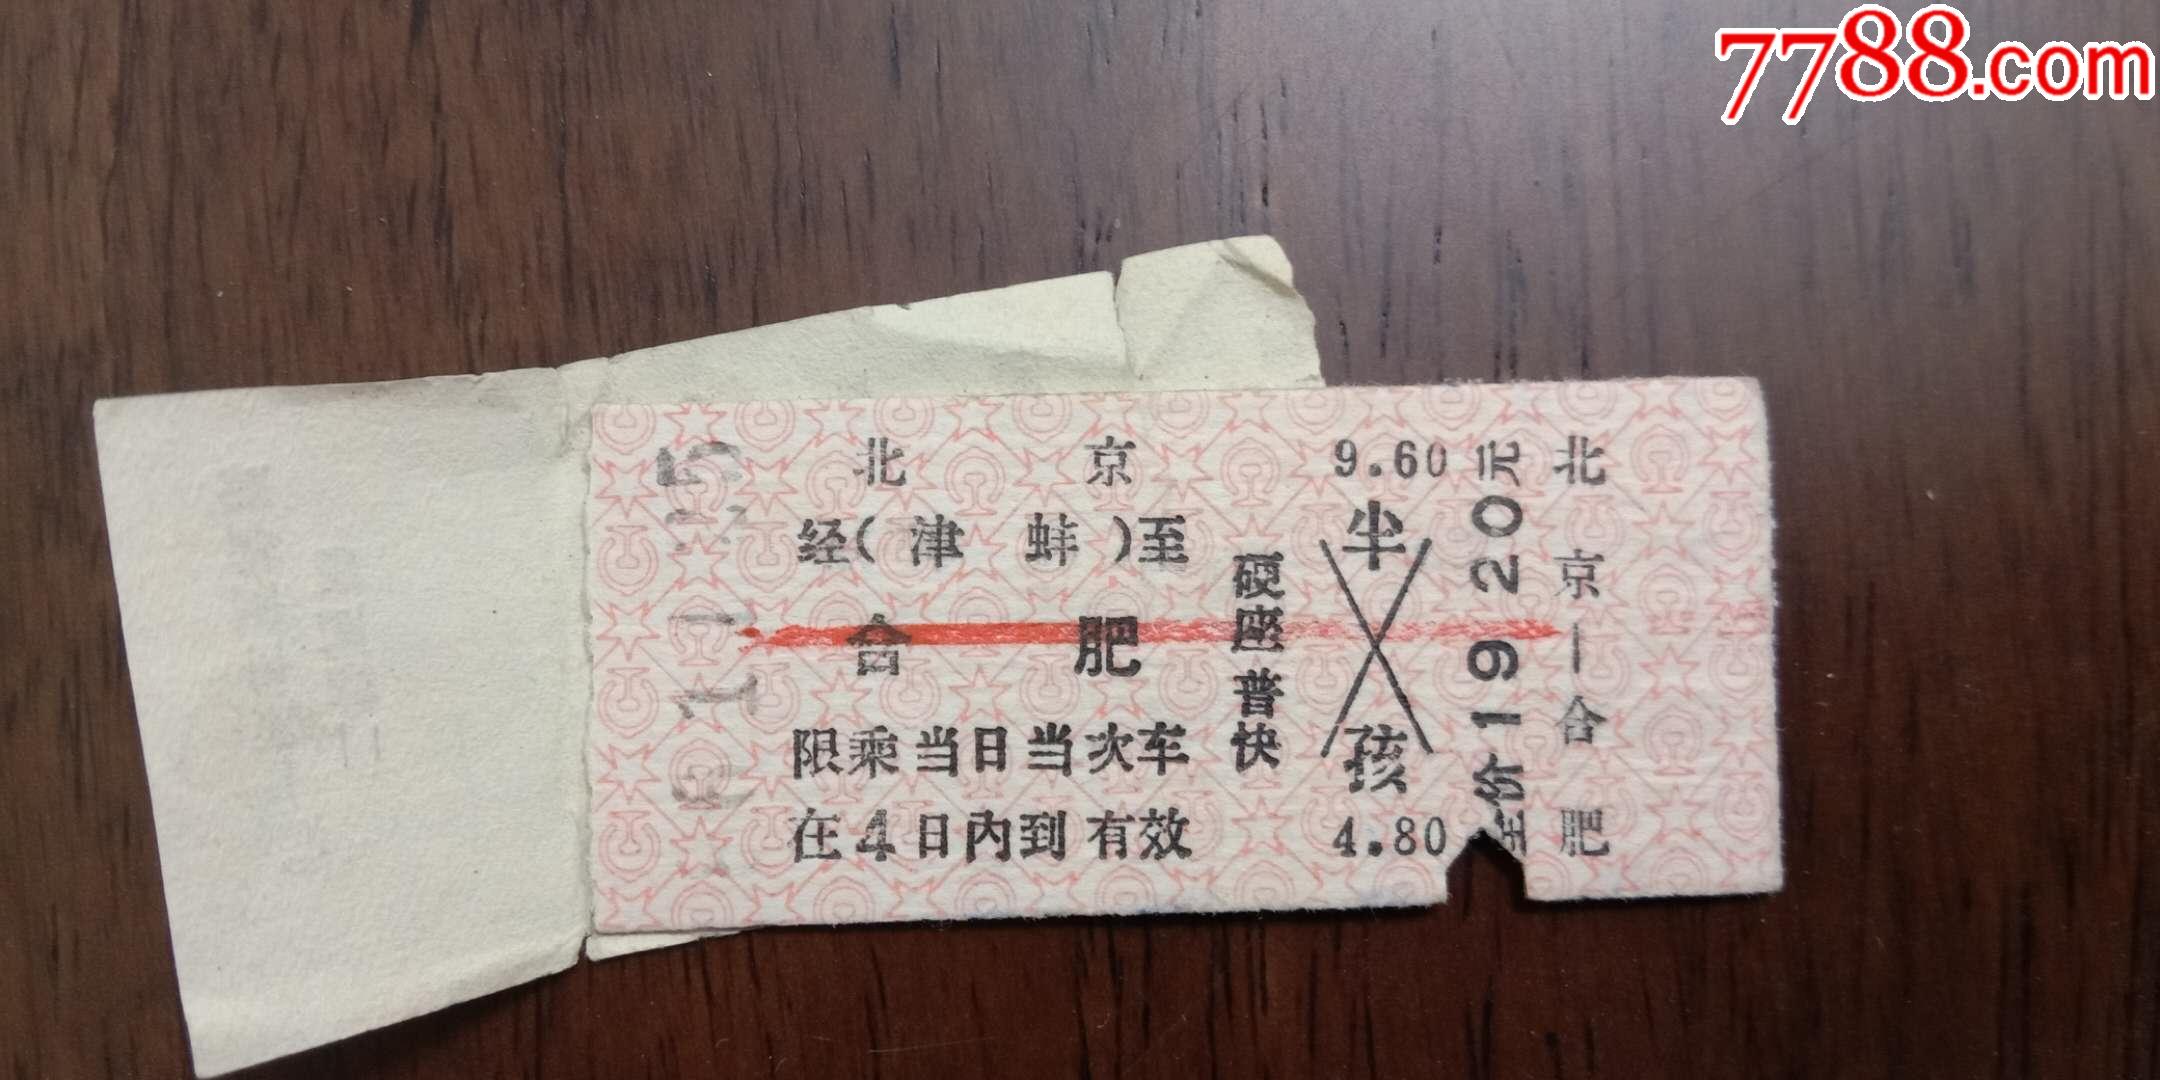 老火车票,北京一合肥